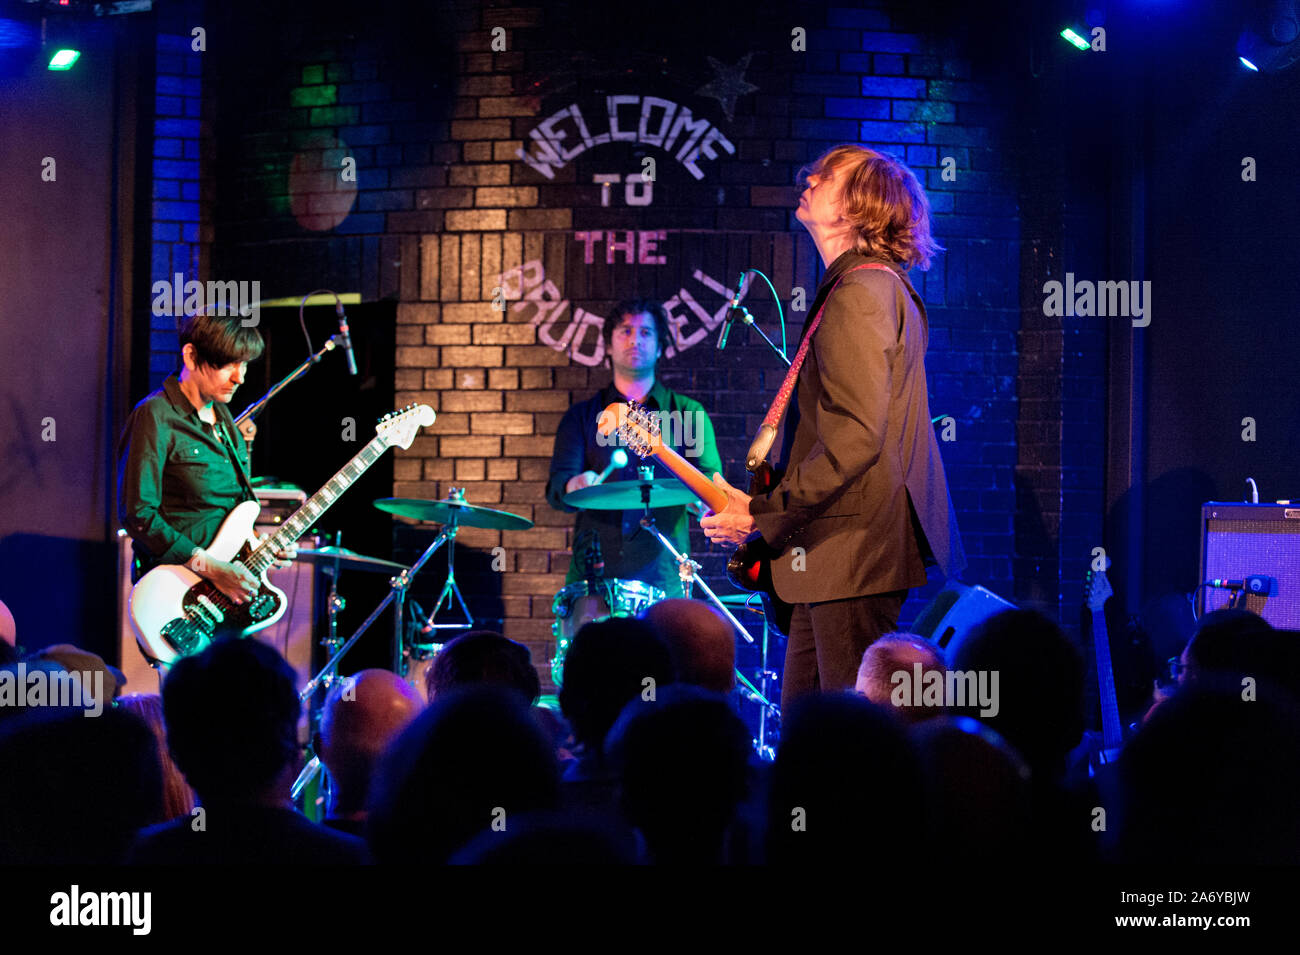 Die Thurston Moore Gruppe im Konzert an Brudenell Social Club, Leeds, UK, 16. Oktober 2019. Thurston Moore mit Gitarre auf der rechten Seite. Debbie Googe am Bass auf der linken Seite. Stockfoto